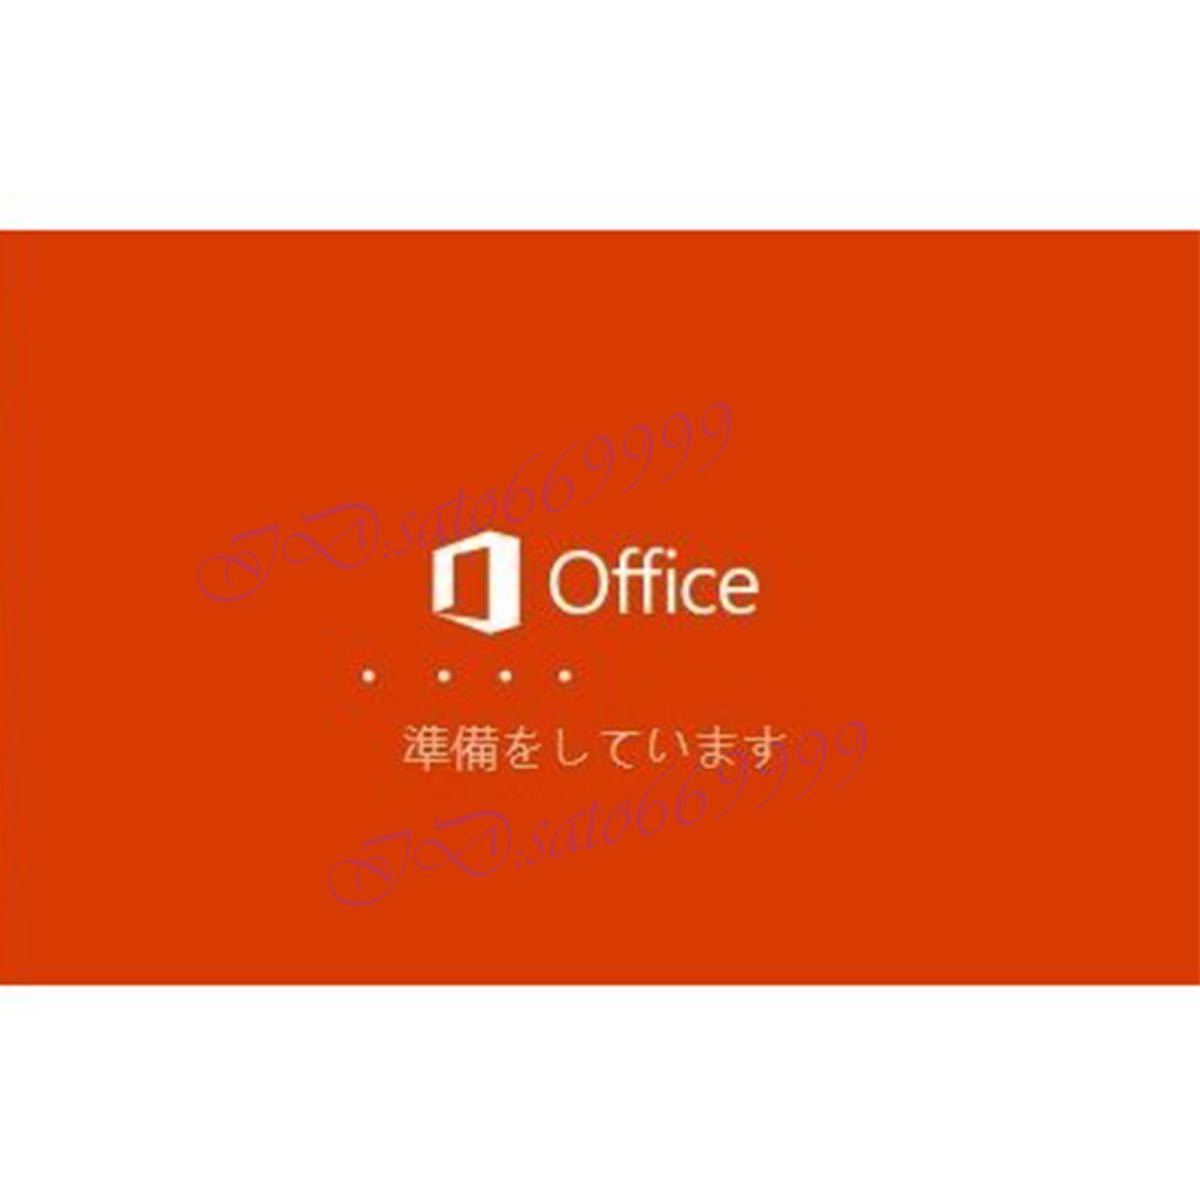 ★安心サポート★ Microsoft Office 2021 Professional Plus office2021 プロダクトキー Access Word Excel PowerPoin正規認証保証日本語2の画像2